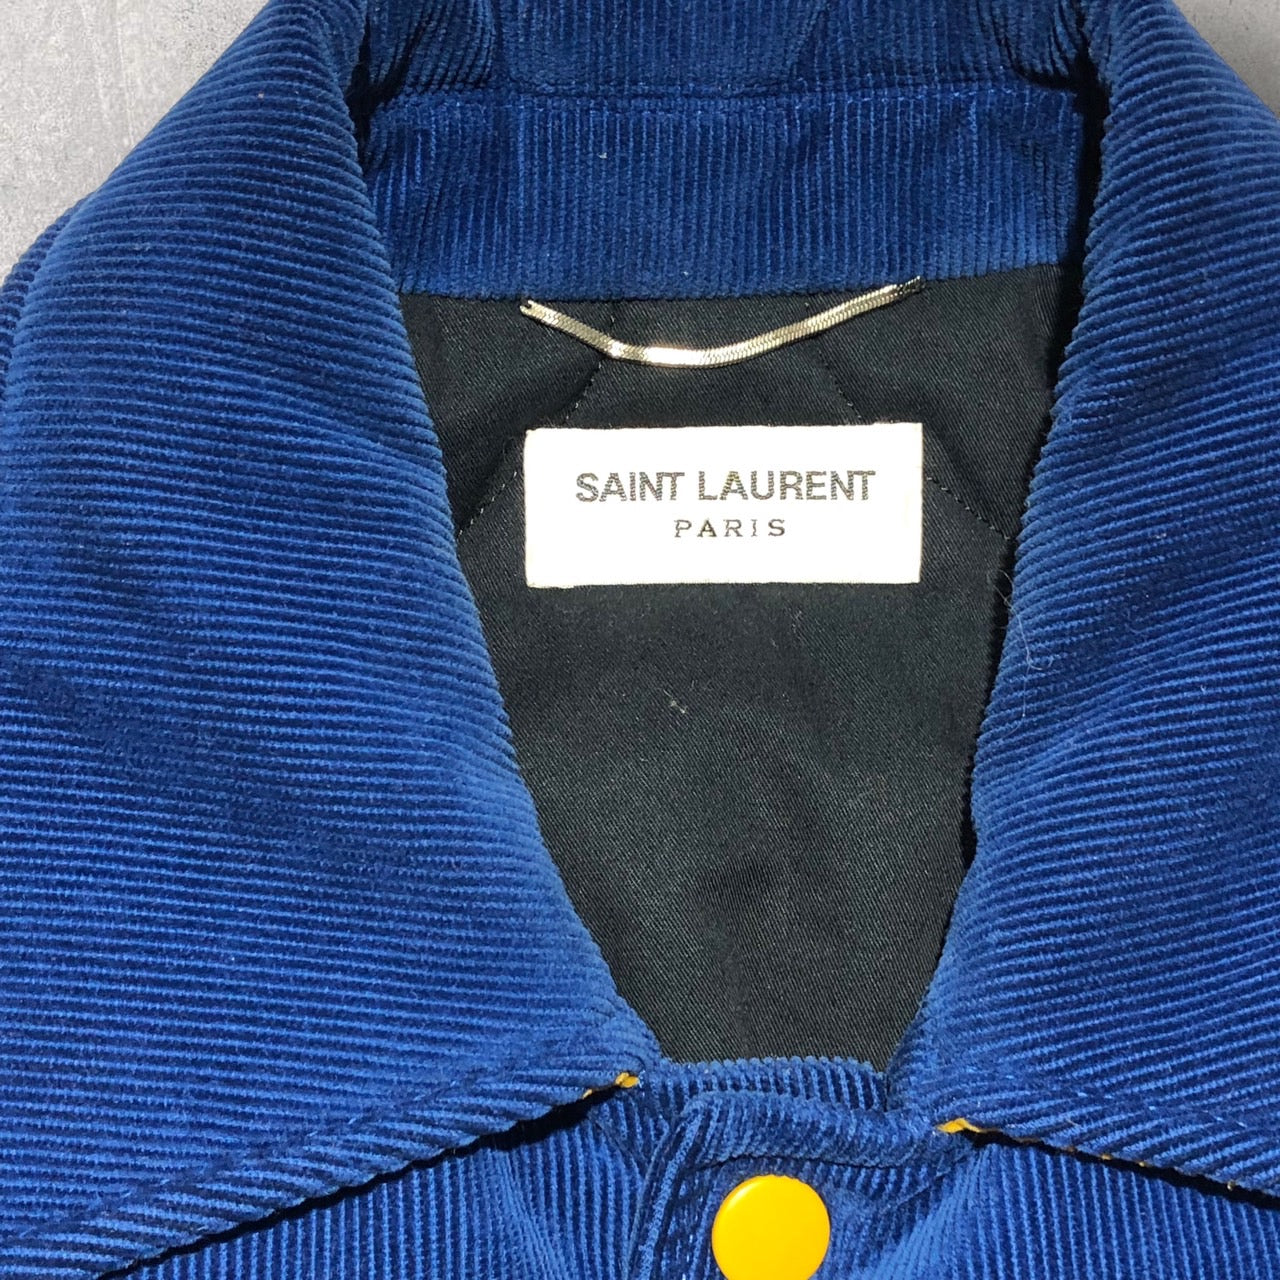 Saint Laurent(サンローラン) 17AWコーデュロイブルゾン 485686 Y006R 44(Mサイズ程度) ブルー